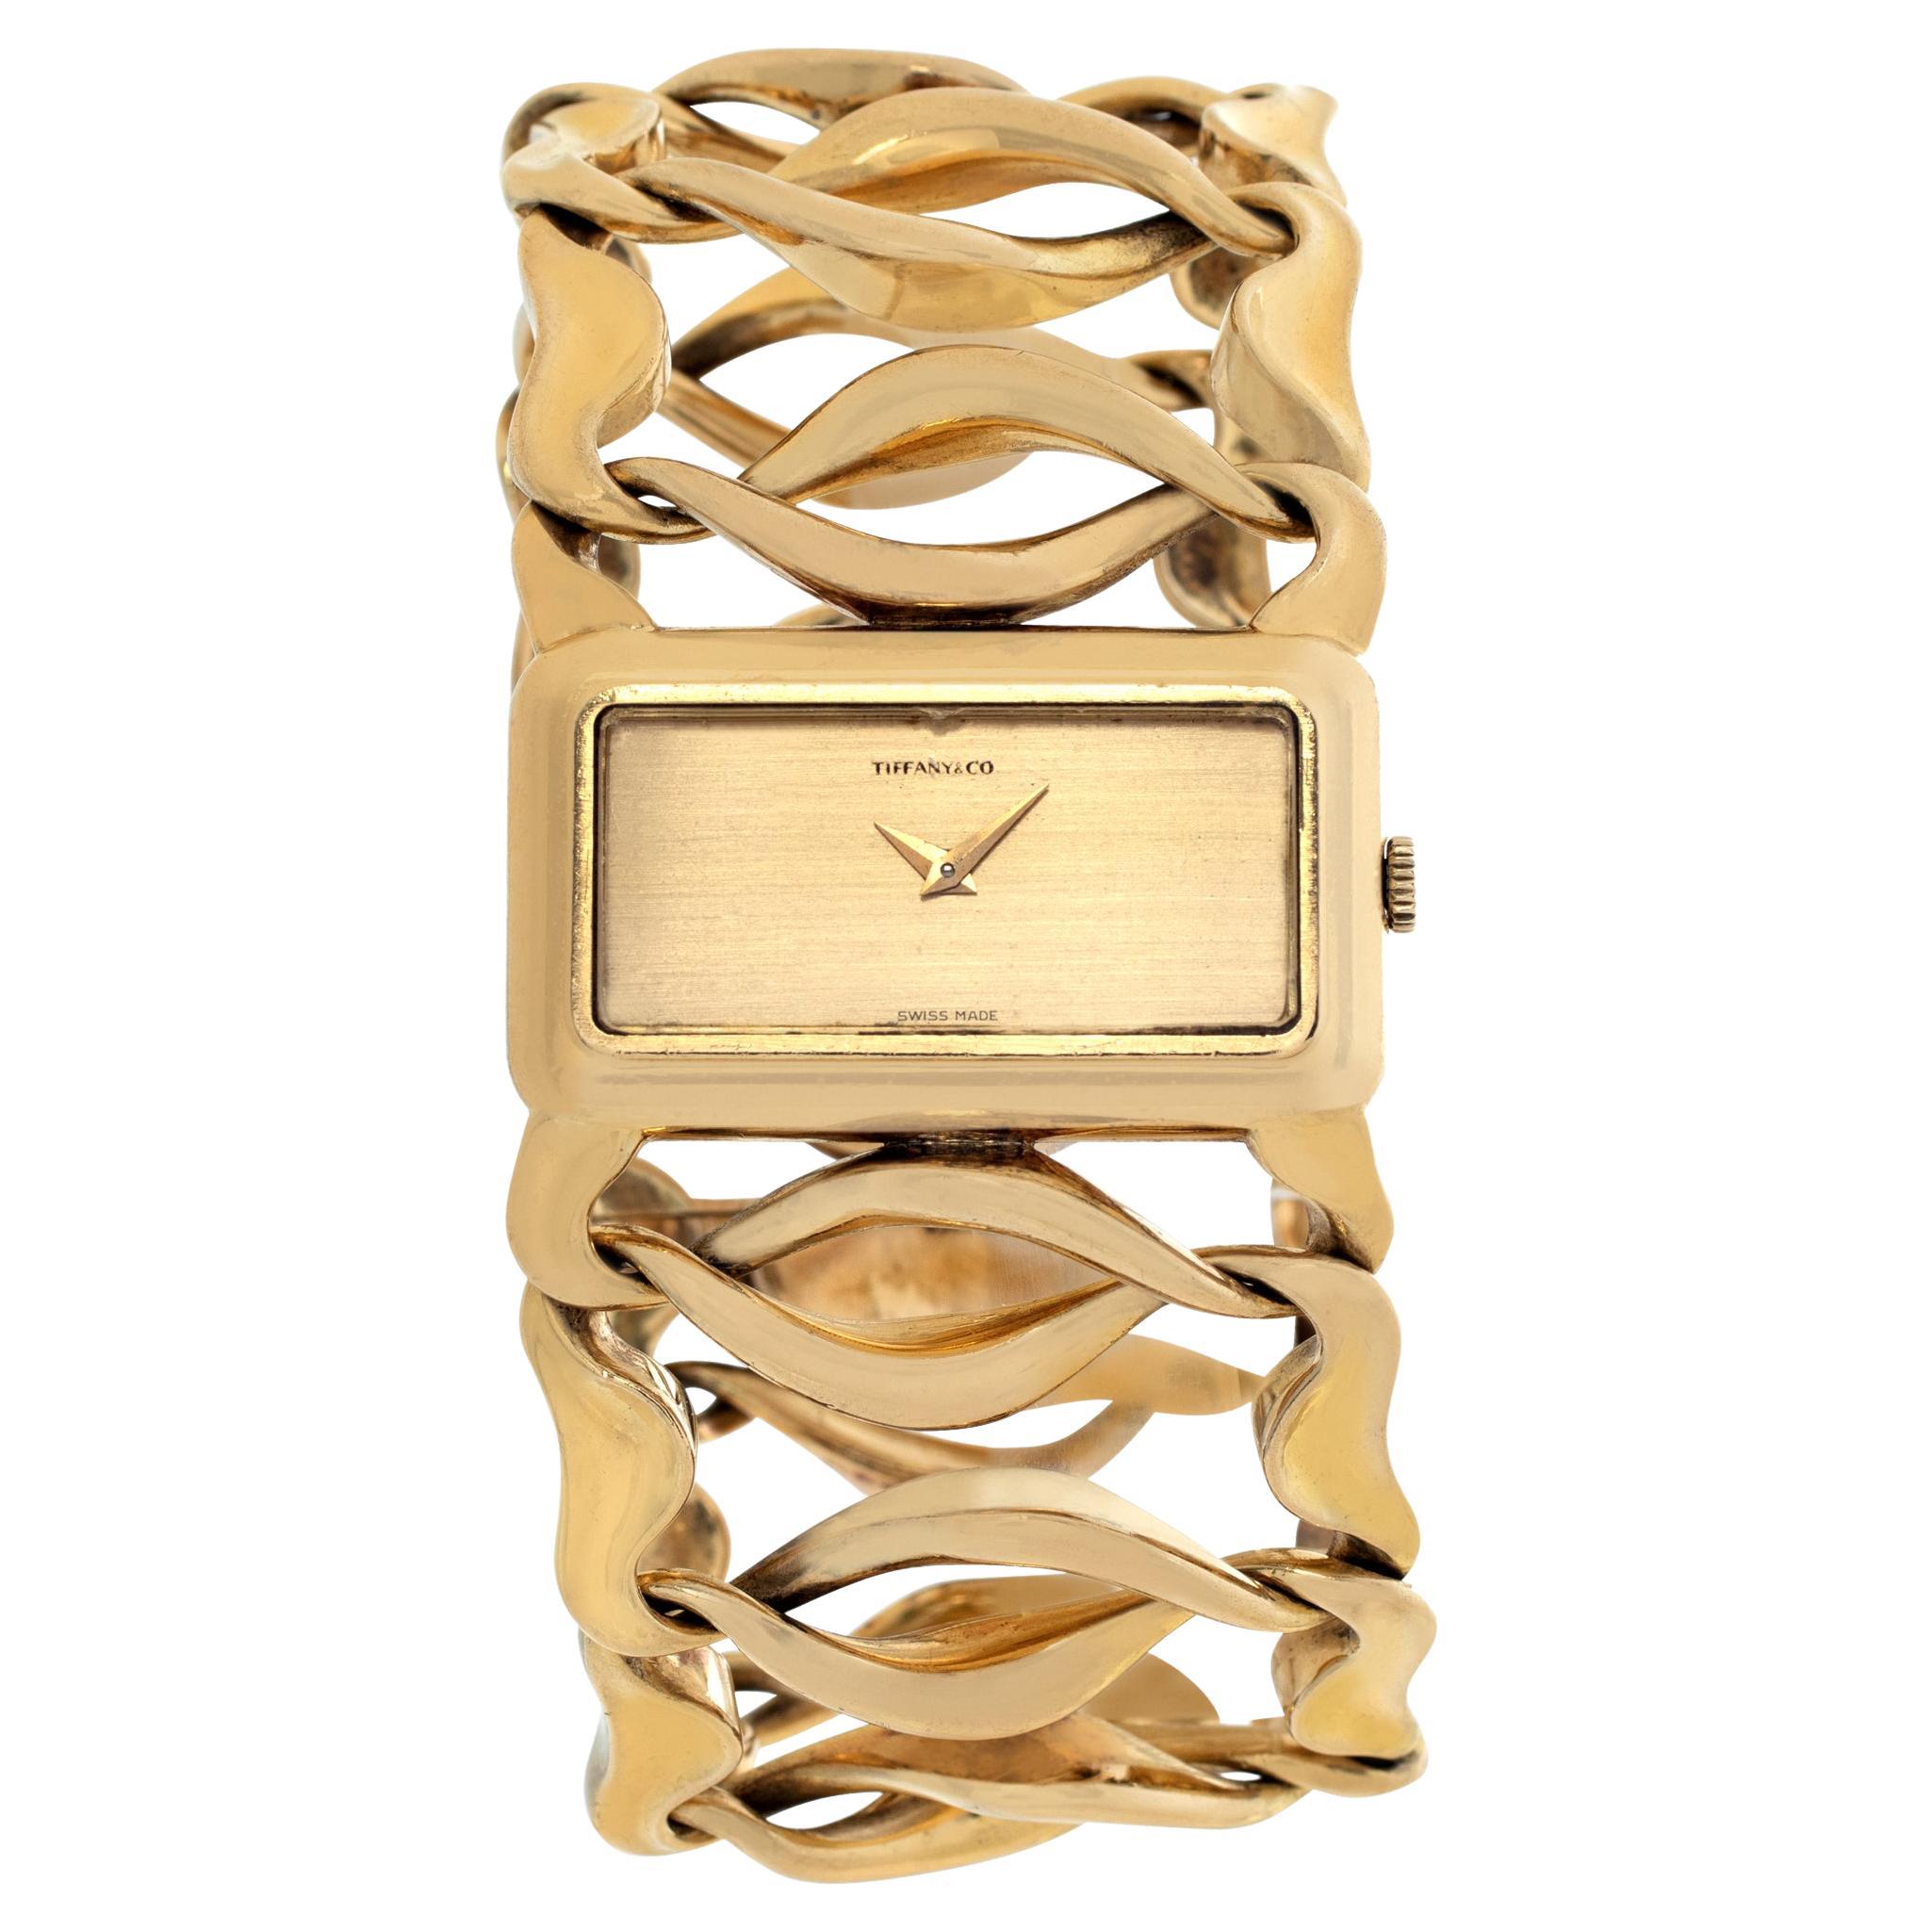 Tiffany & Co. Klassische Armbanduhr aus 18k Gelbgold